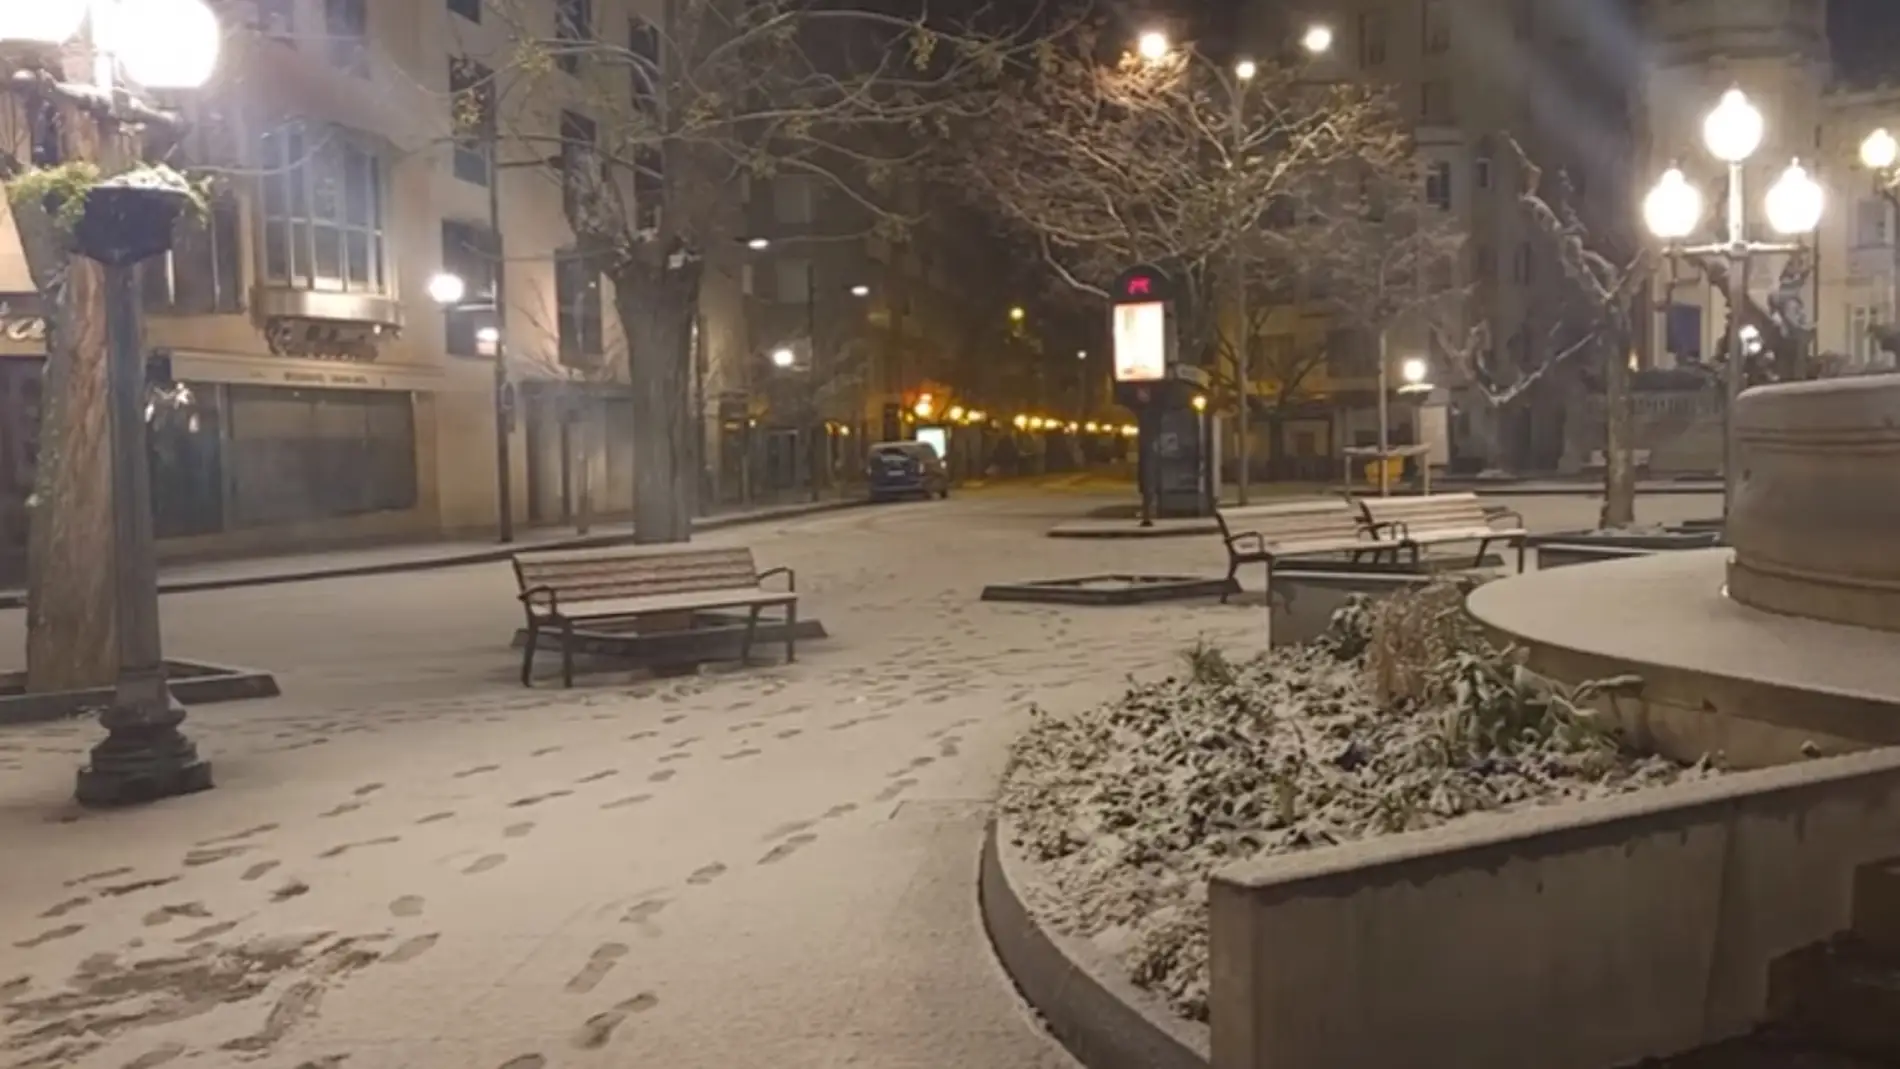 Imagen de la Plaza de Navarra con nieve a primera hora de la mañana.